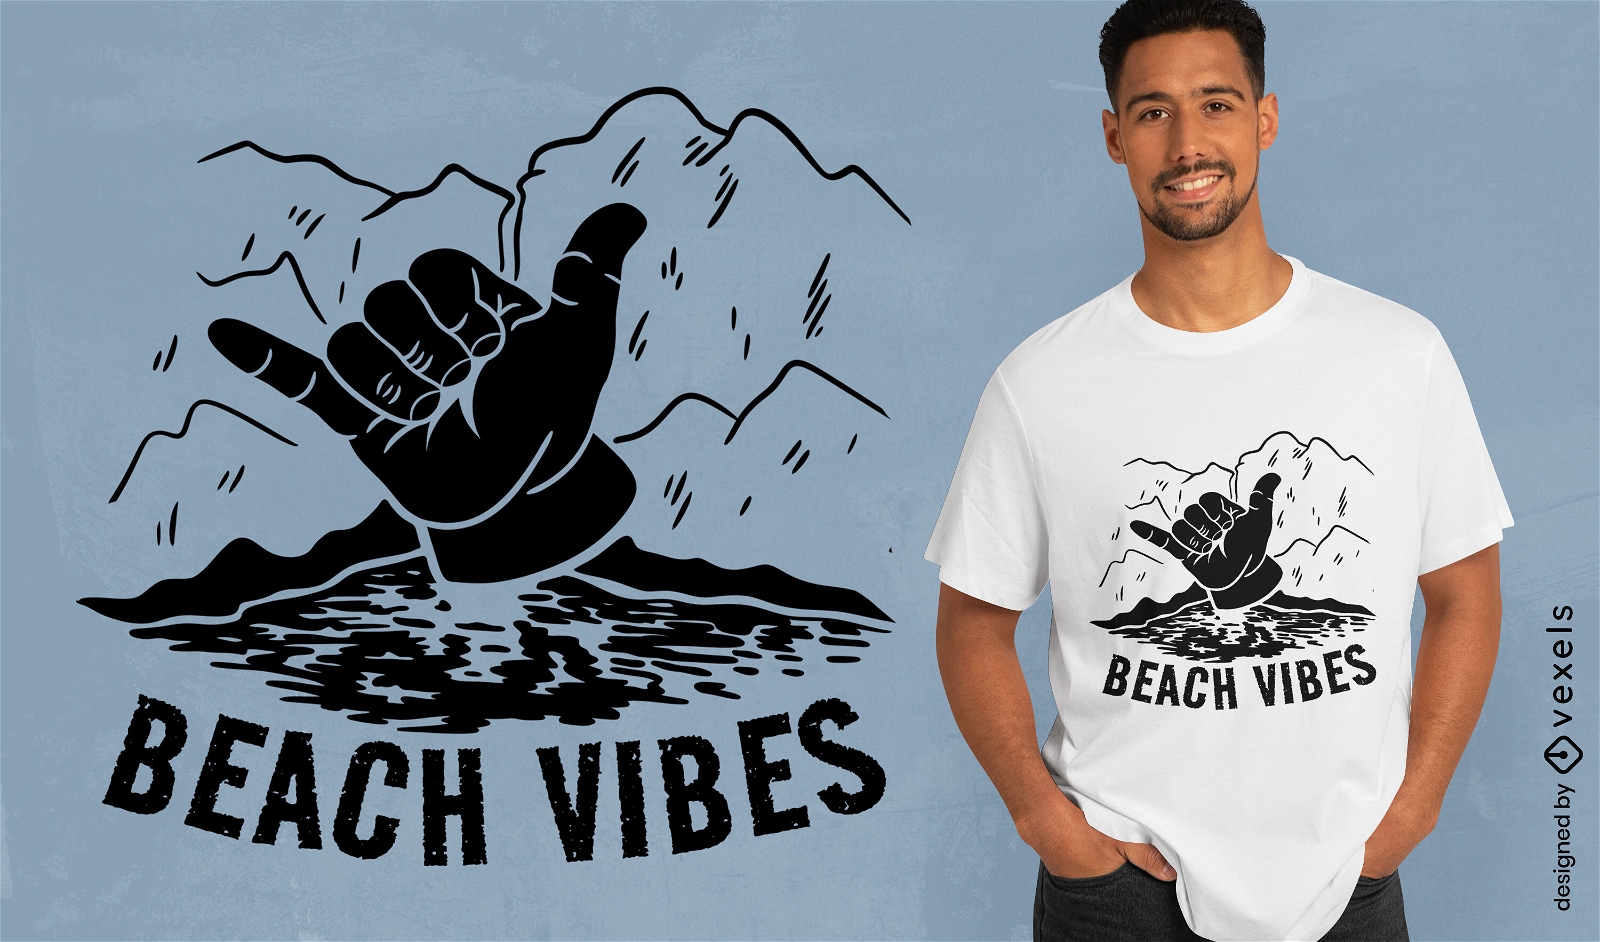 Dise?o de camiseta de mano shaka de vibraciones de playa.